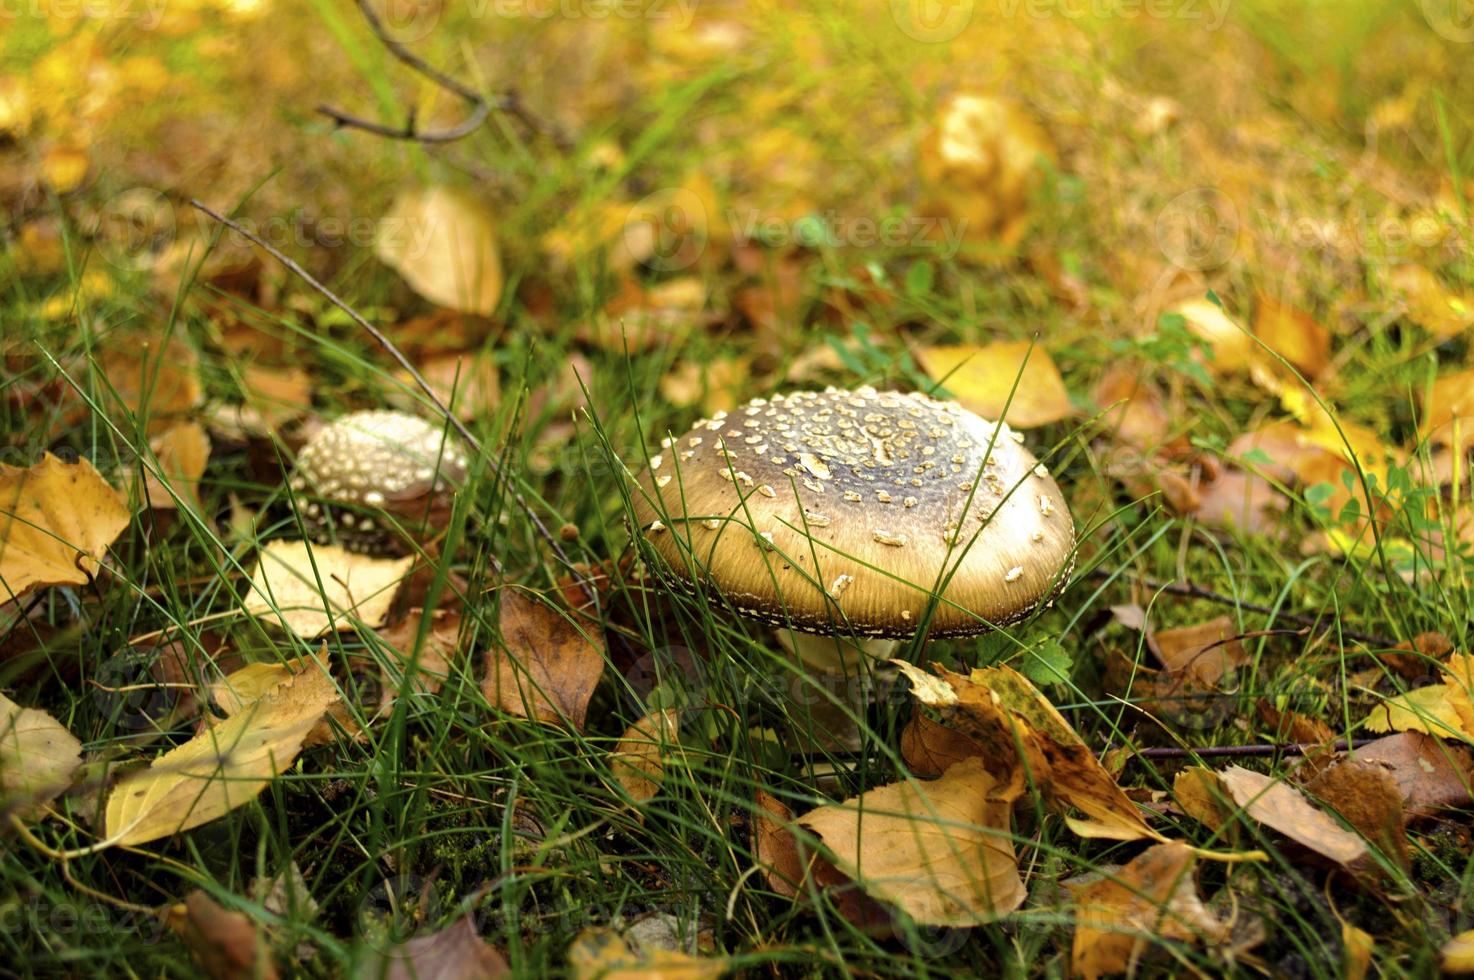 svamp i gul lövverk på höst gräsmatta foto